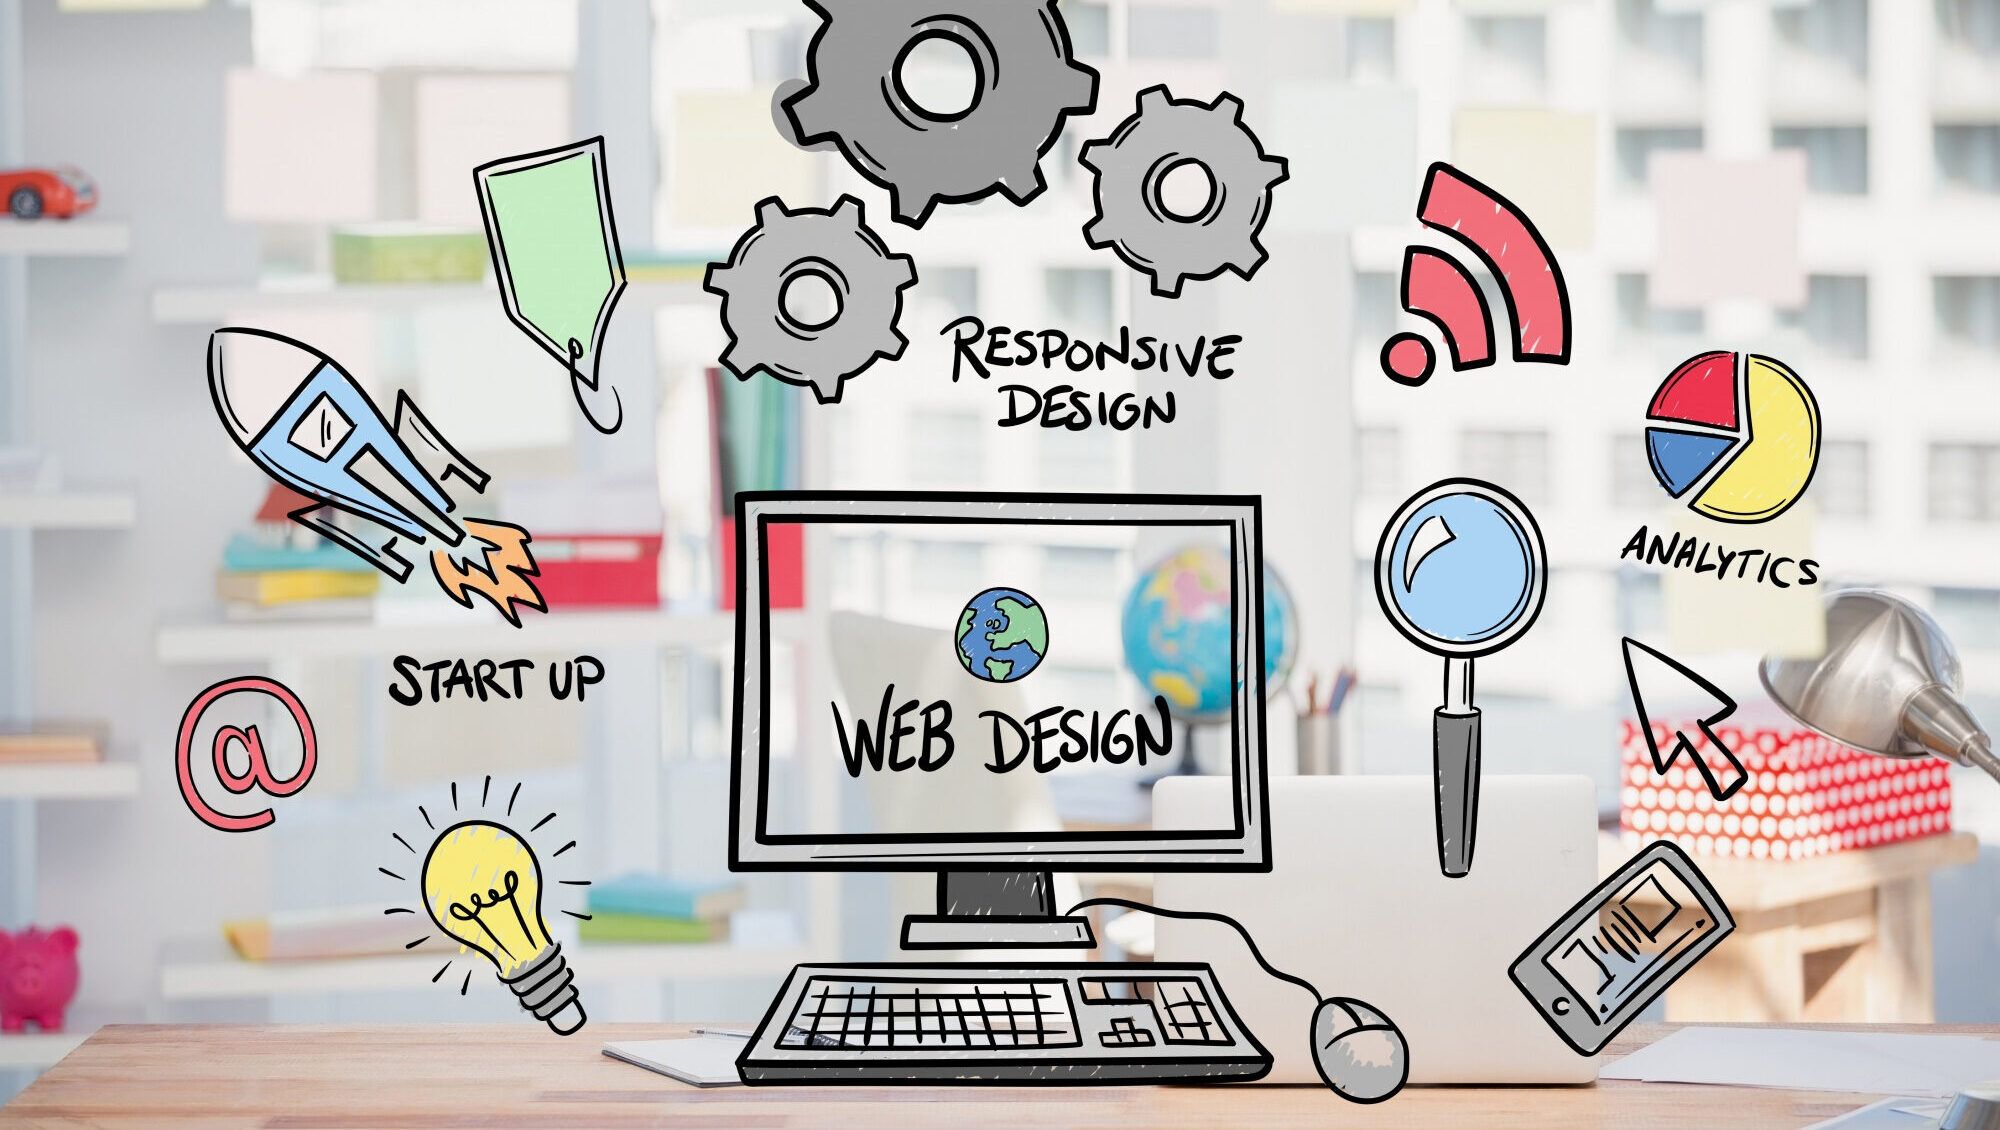 Comment améliorer la conversion des visiteurs en clients grâce au web design ?